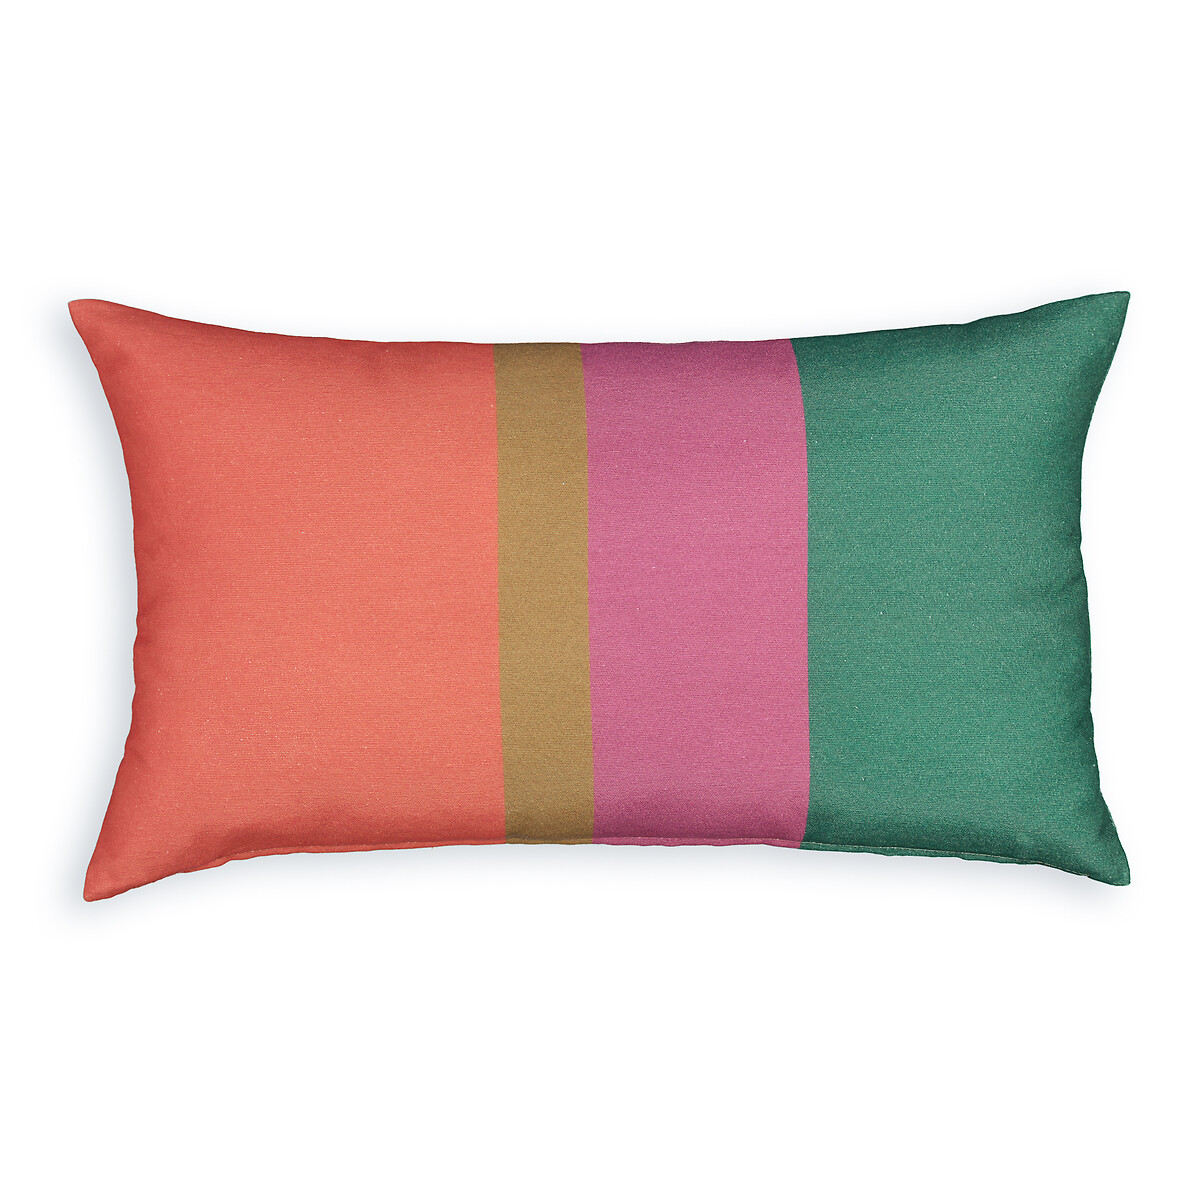 Подушка для открытого пространства прямоугольная Podnos  50 x 30 см разноцветный